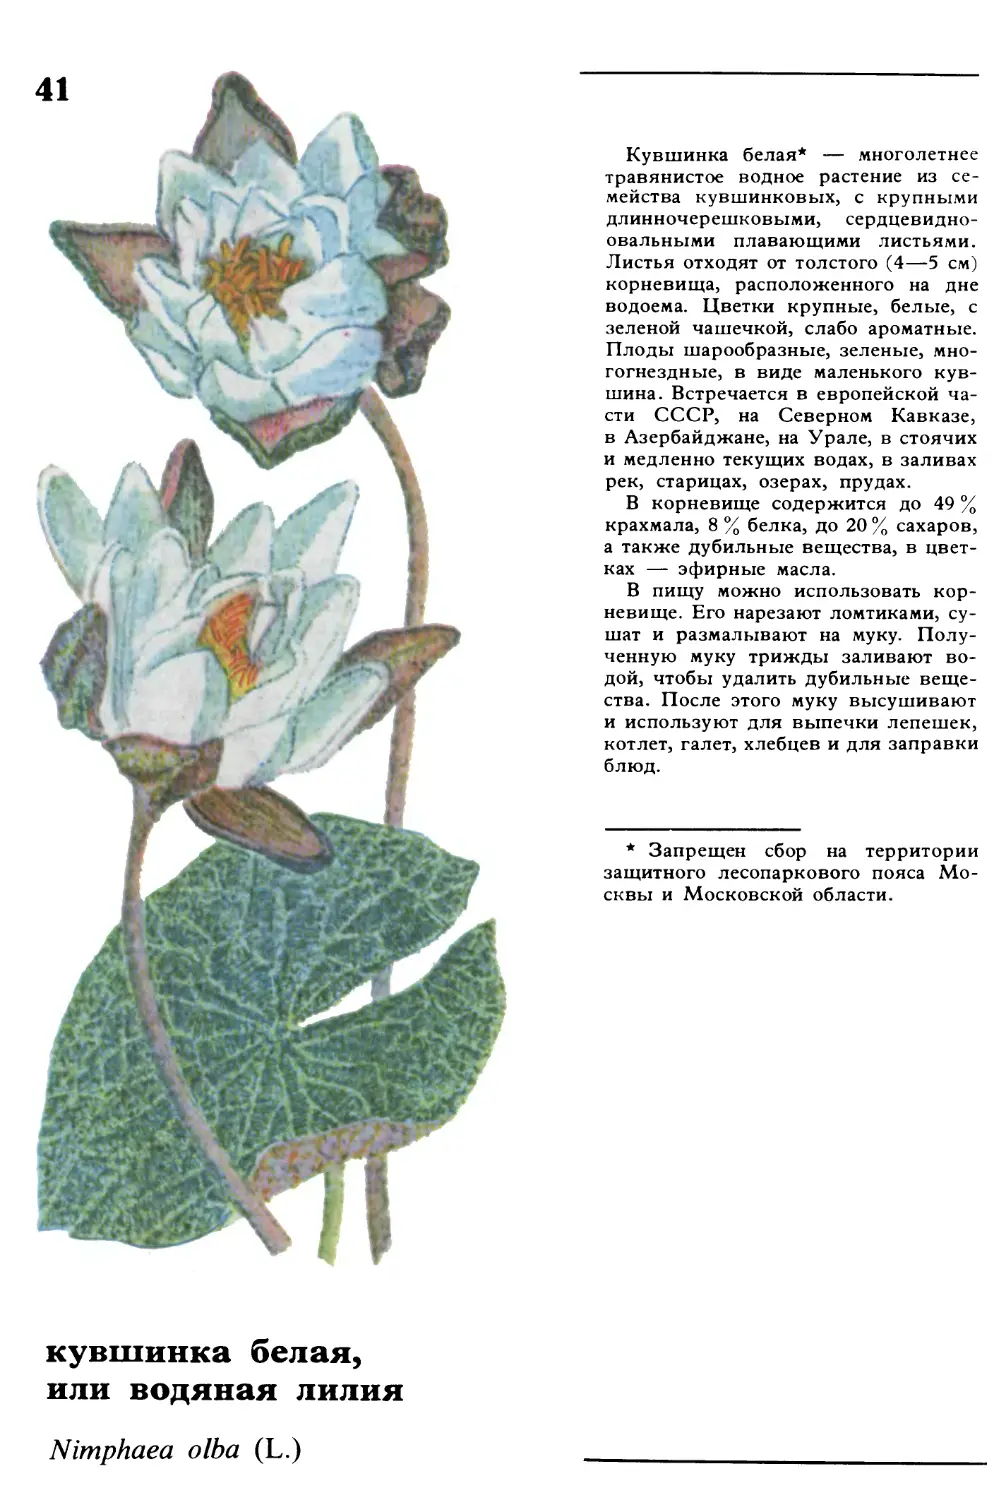 Кувшинка белая
кувшинка белая, или водяная лилия
Nimphaea olba L.